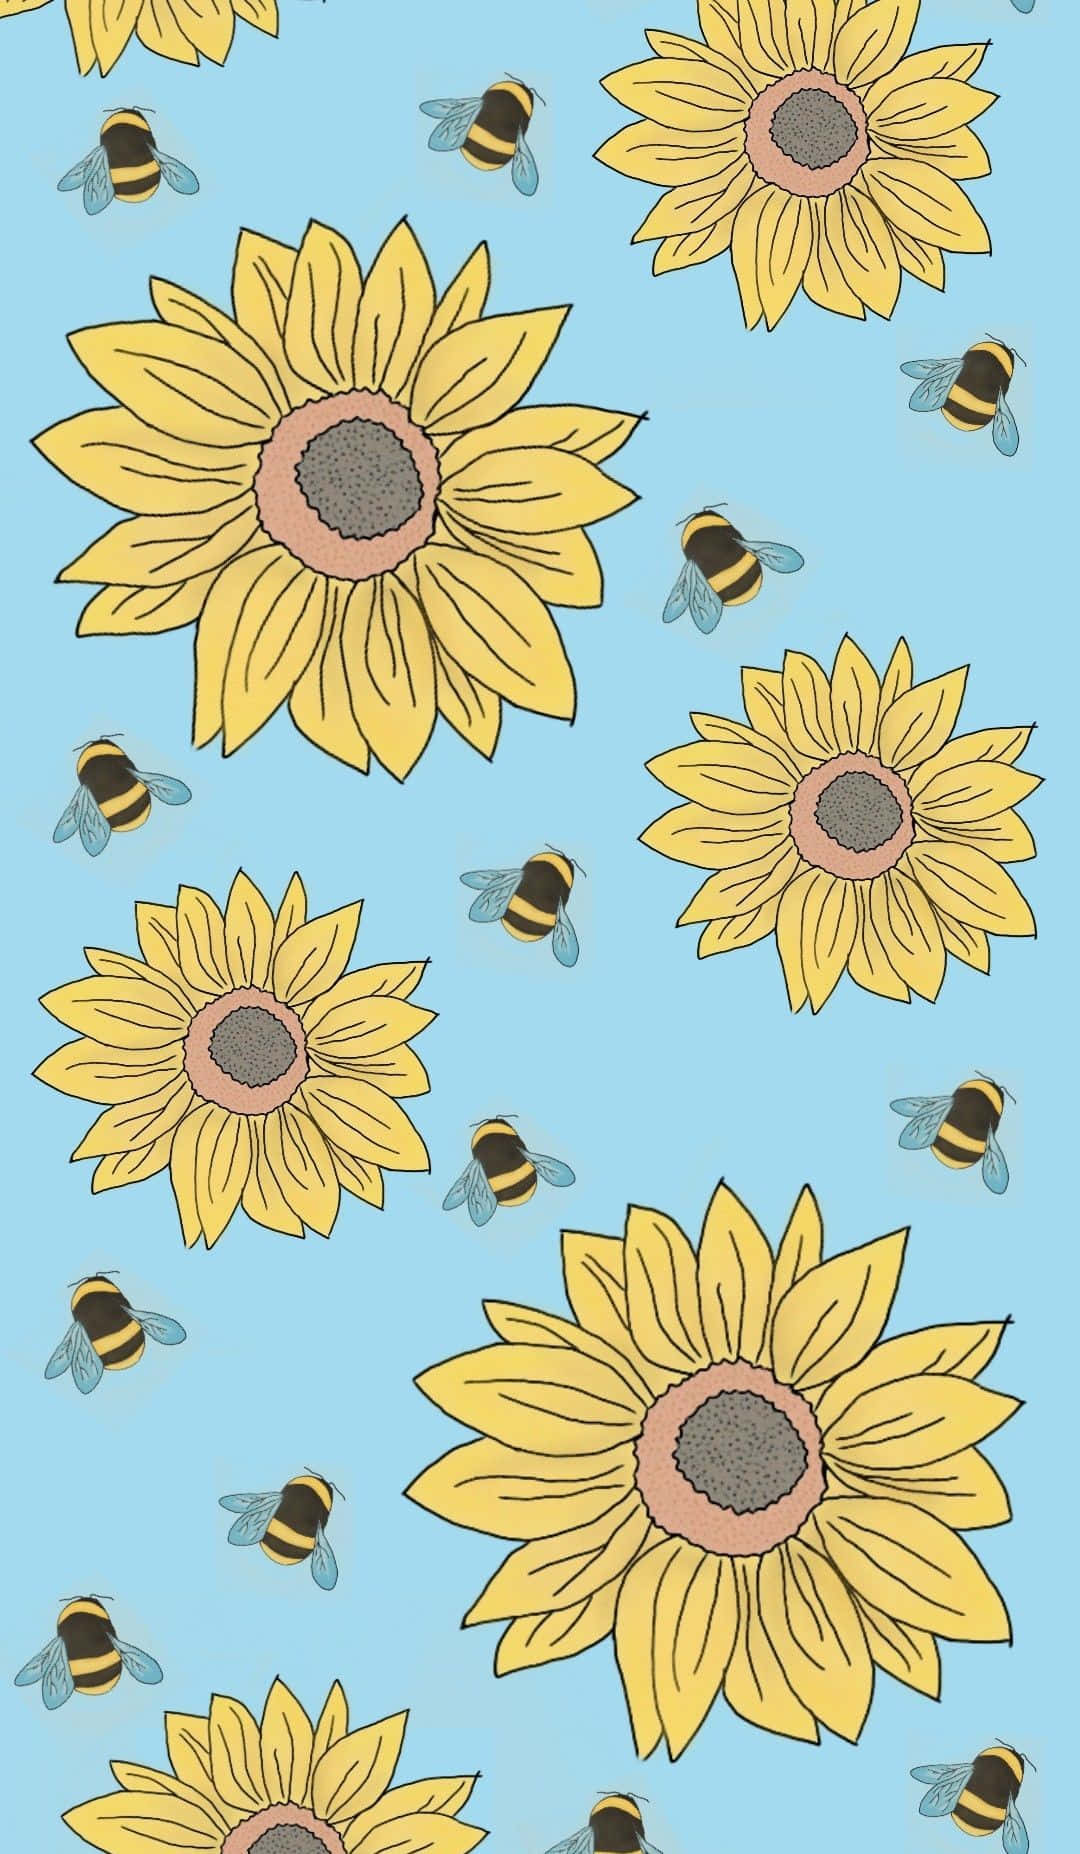 Erhellensie Ihren Tag Mit Diesem Fröhlichen Sonnenblumen-ästhetik Iphone Hintergrundbild! Wallpaper